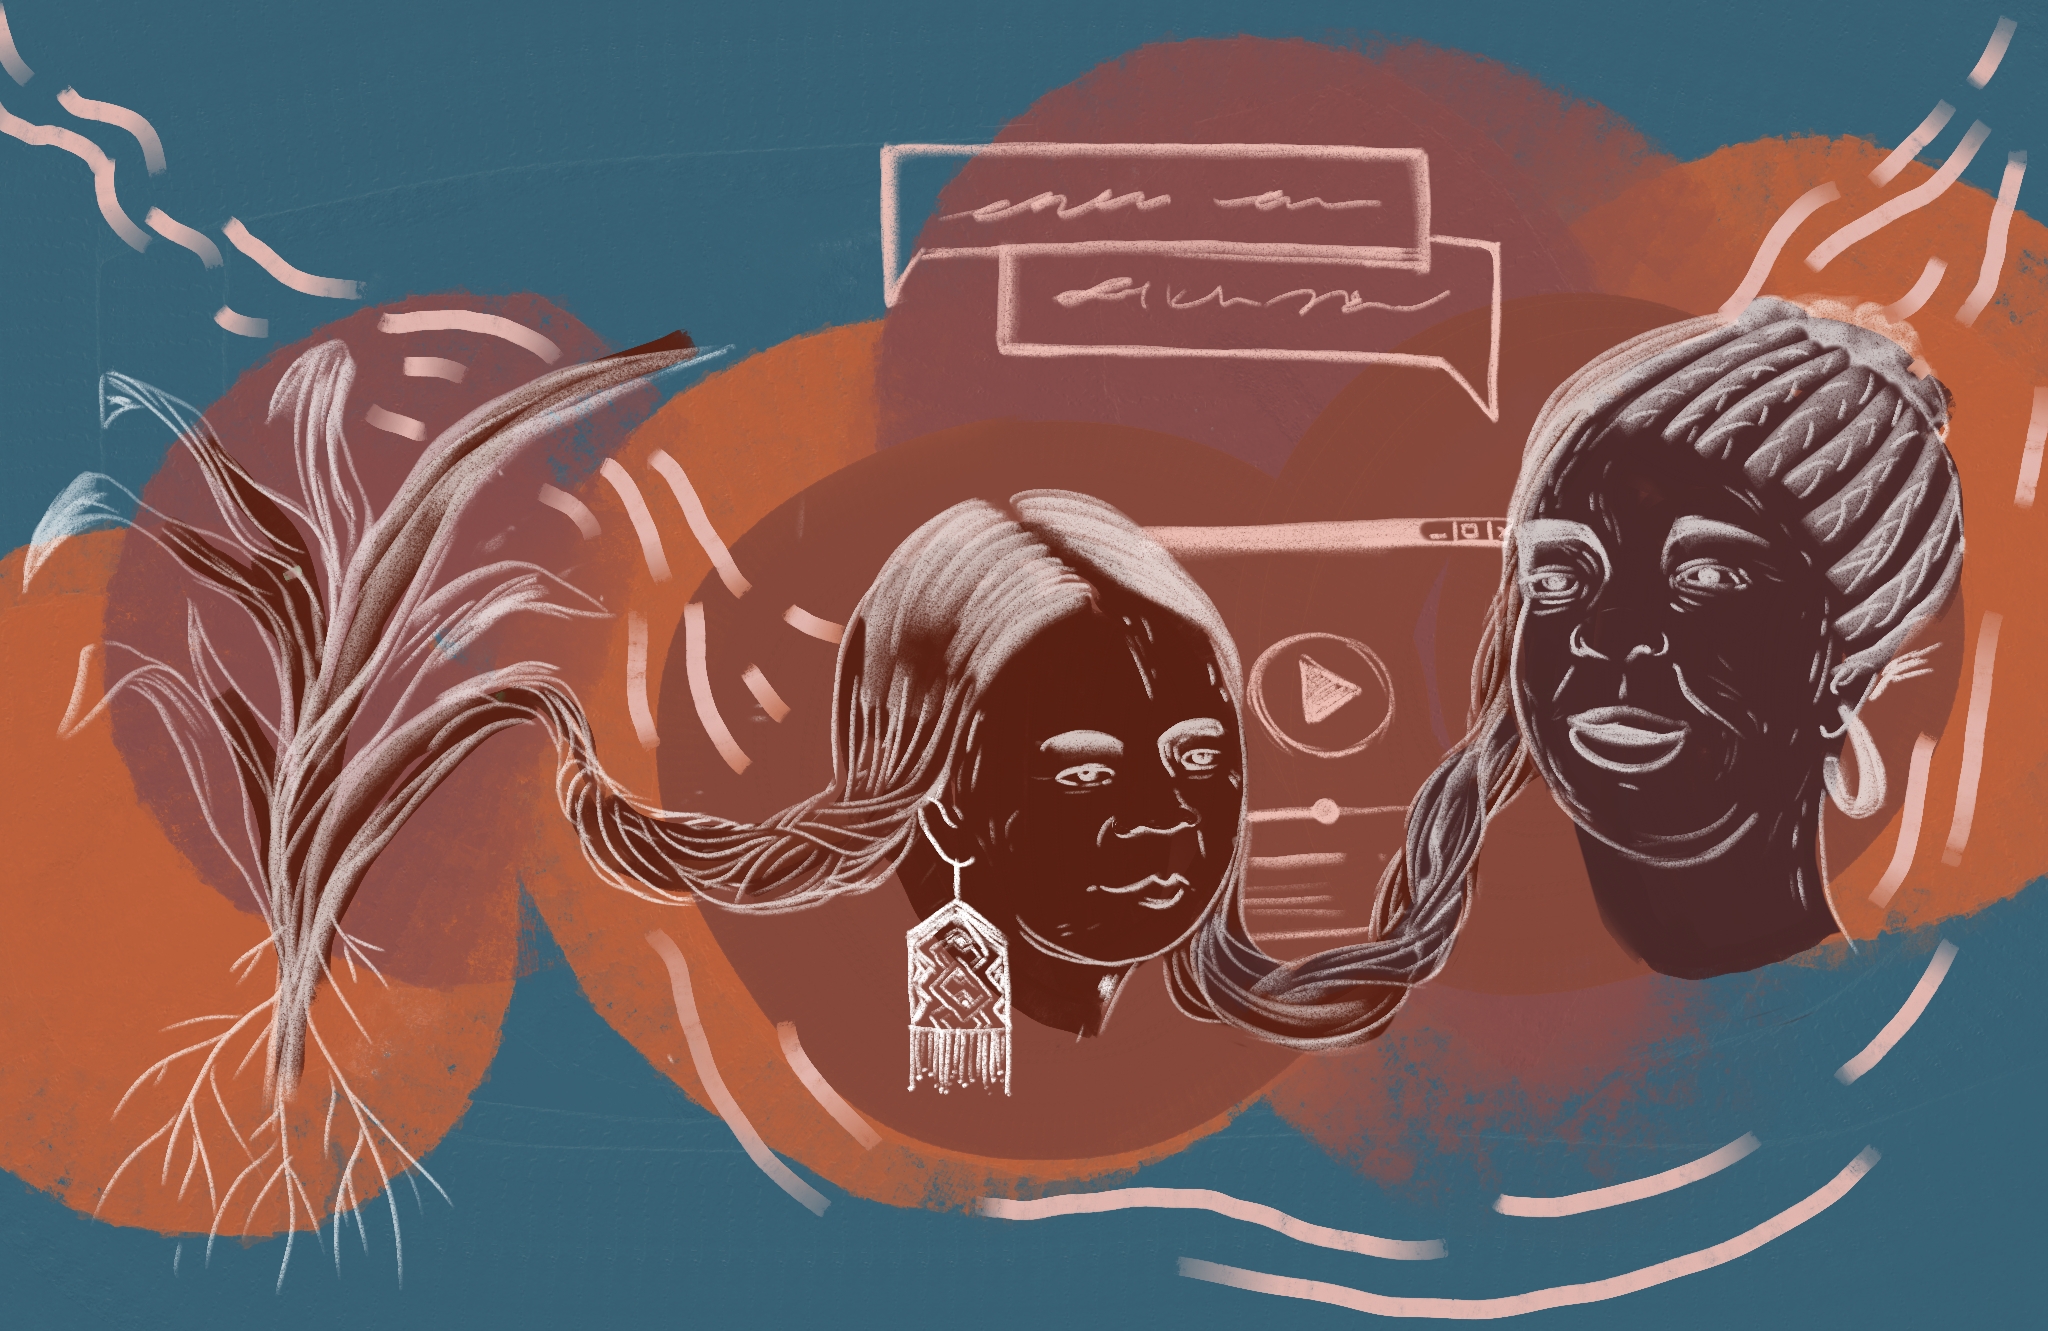 Ilustração com duas mulheres negras, uma criança e outra já adulta, que se conectam pelas tranças e na natureza, em referência à ancestralidade e aos saberes de comunidades tradicionais, sobretudo ao conhecimento. A arte foi feita por Stephanie Pollo.